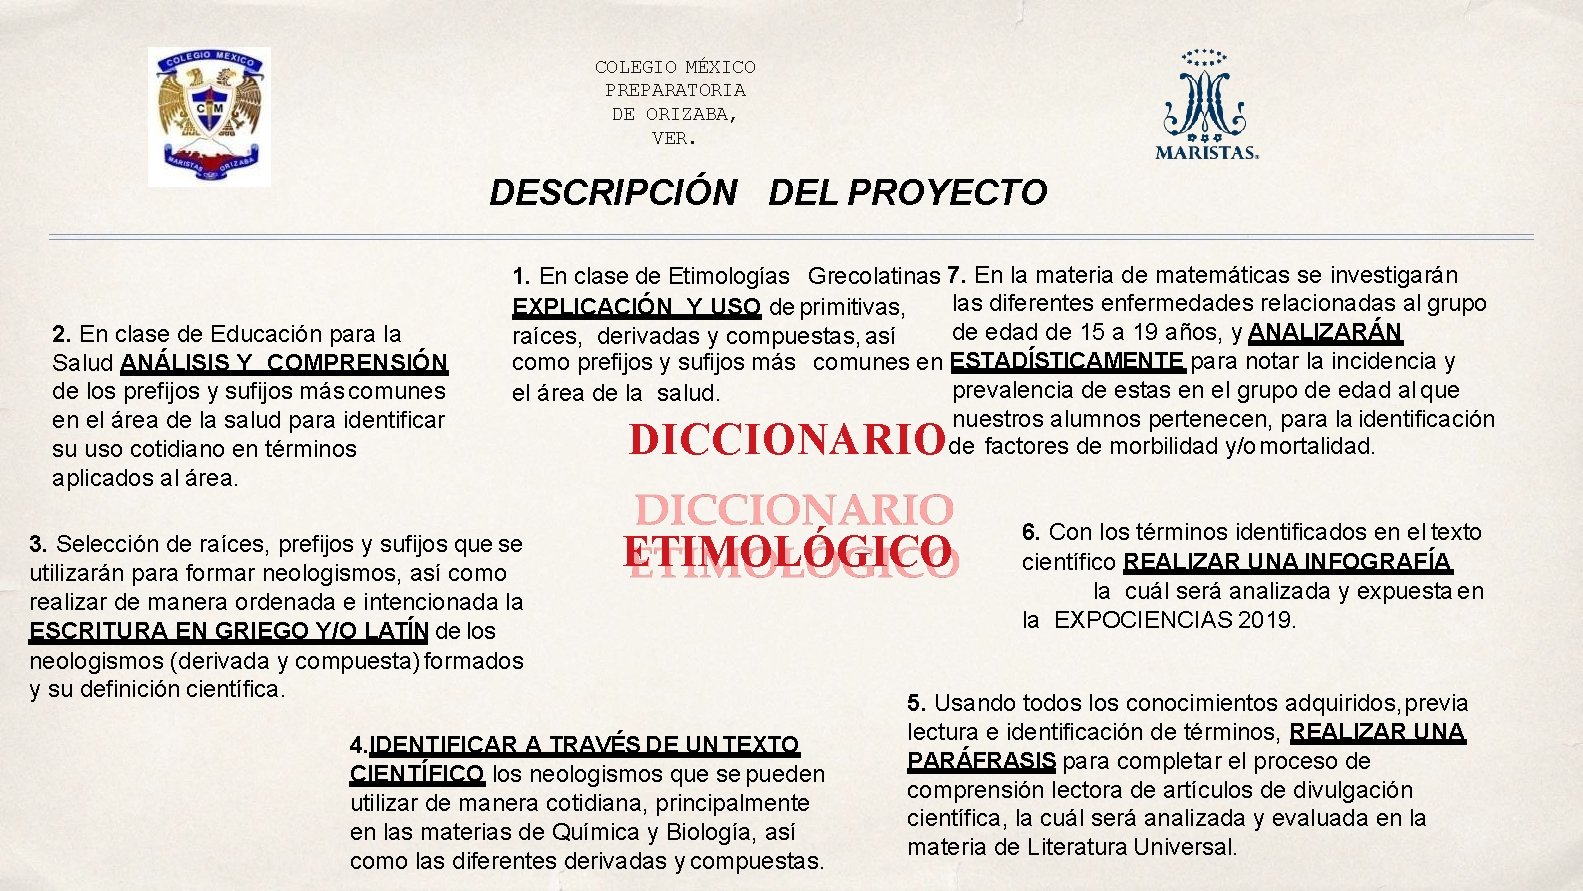 COLEGIO MÉXICO PREPARATORIA DE ORIZABA, VER. DESCRIPCIÓN DEL PROYECTO 2. En clase de Educación